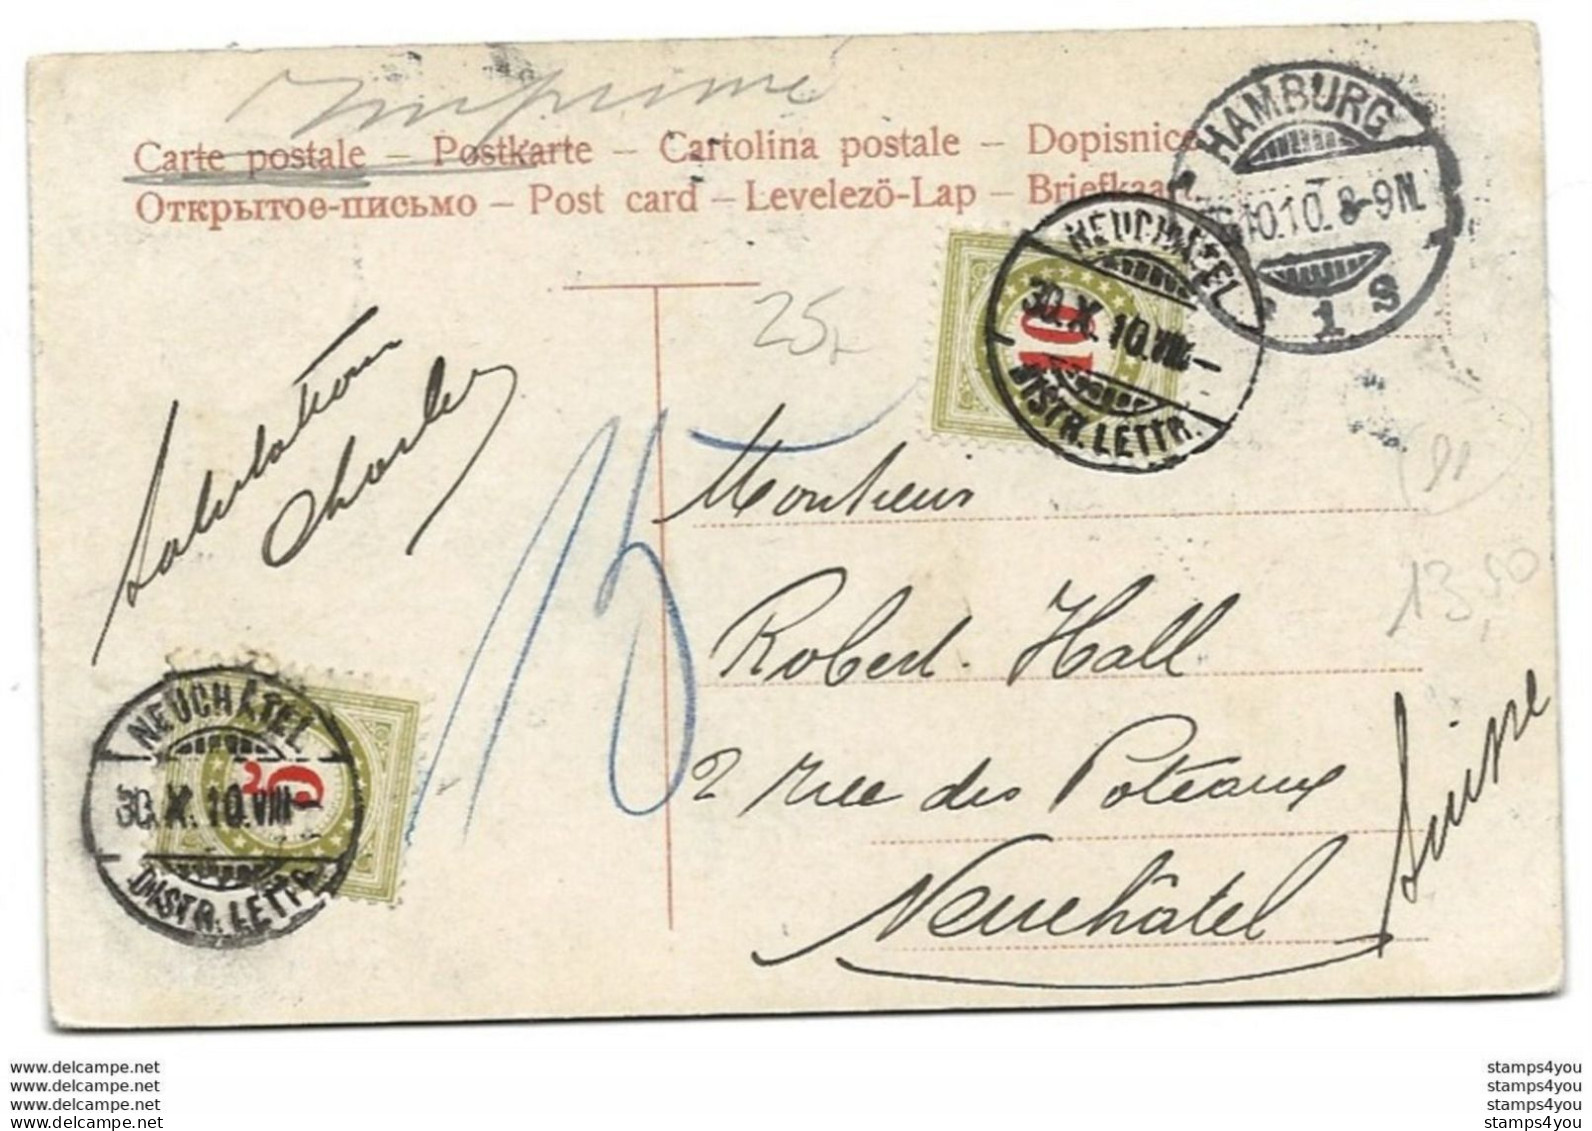 44 - 11 - Carte Envoyée De Hamburg En Suisse 1910 - 2 Timbres Suisses Taxe - Franchise